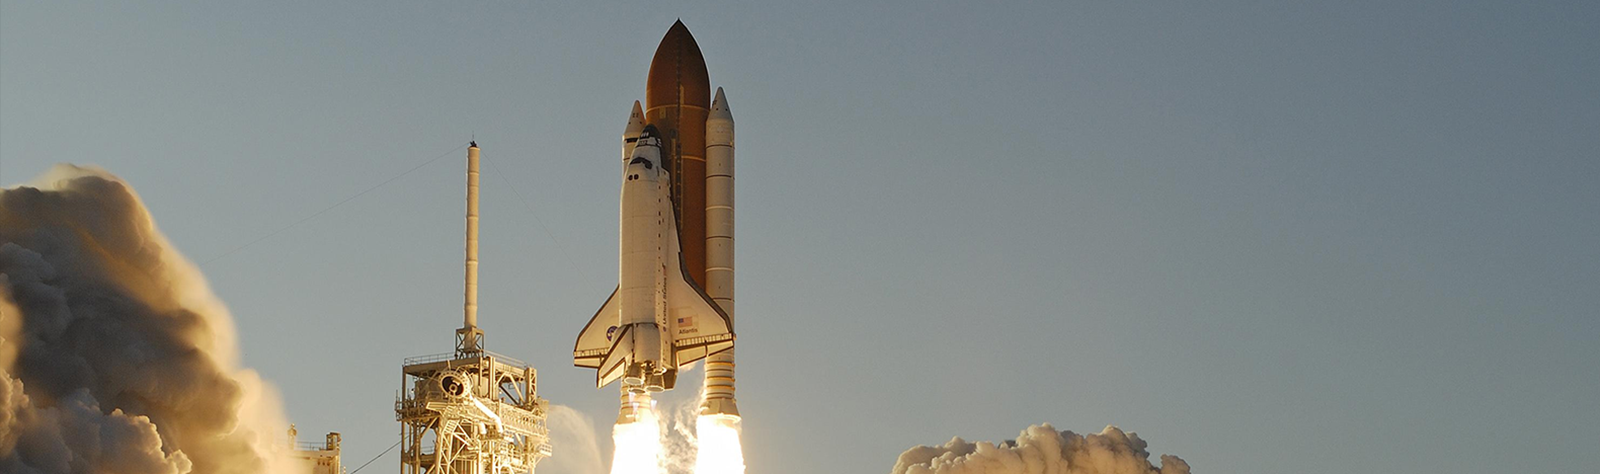 Final-Space-Shuttle-Launch-NASA